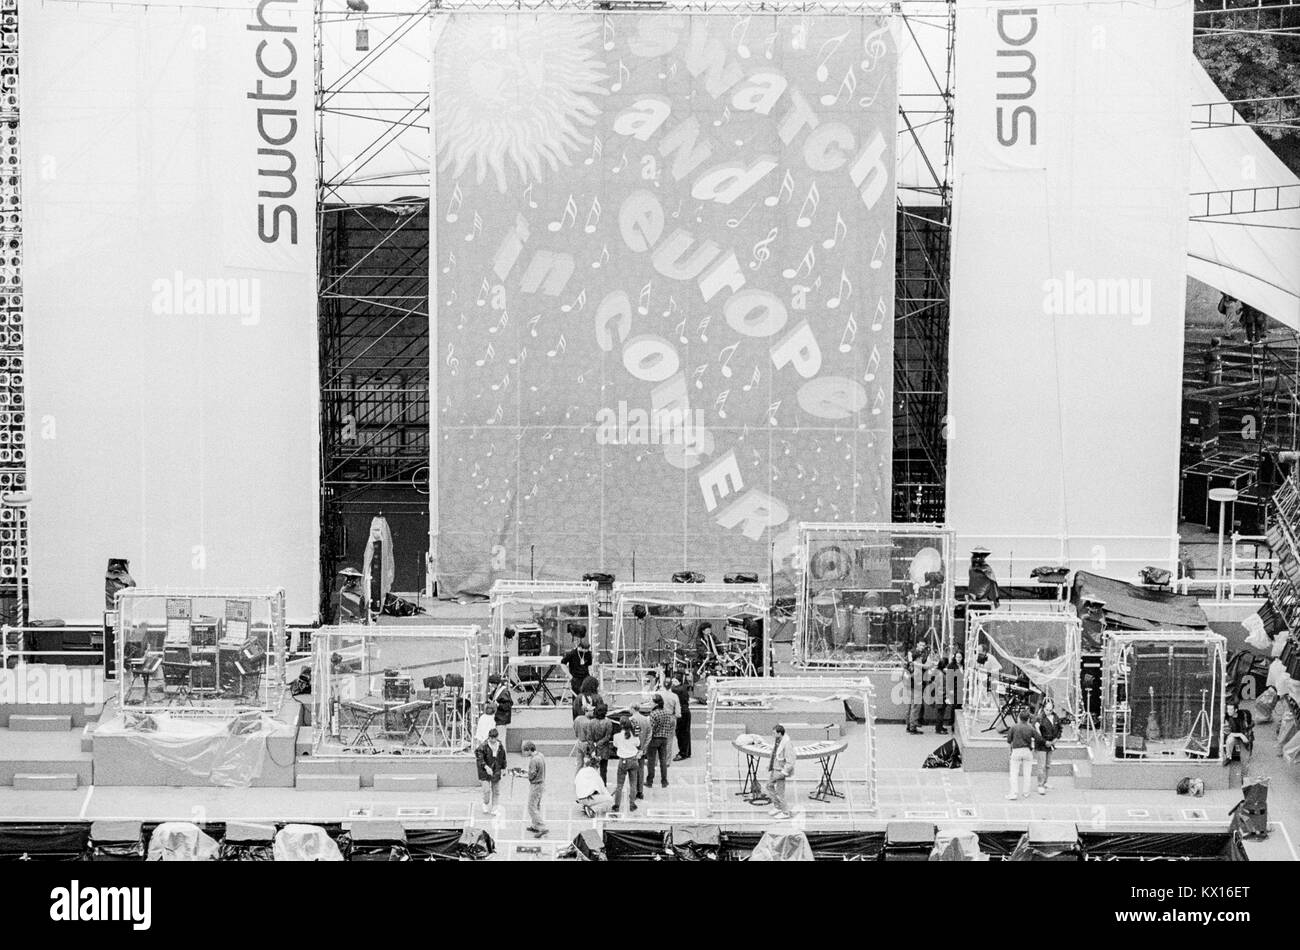 Bâtiment de scène pour Jean Michel Jarre concert Europe en tournée de concerts, mise en scène d'Edwin Shirely Staging construit dans le Waldbhuene auditorium en plein air à Berlin, Allemagne, 11 septembre 1993. Banque D'Images